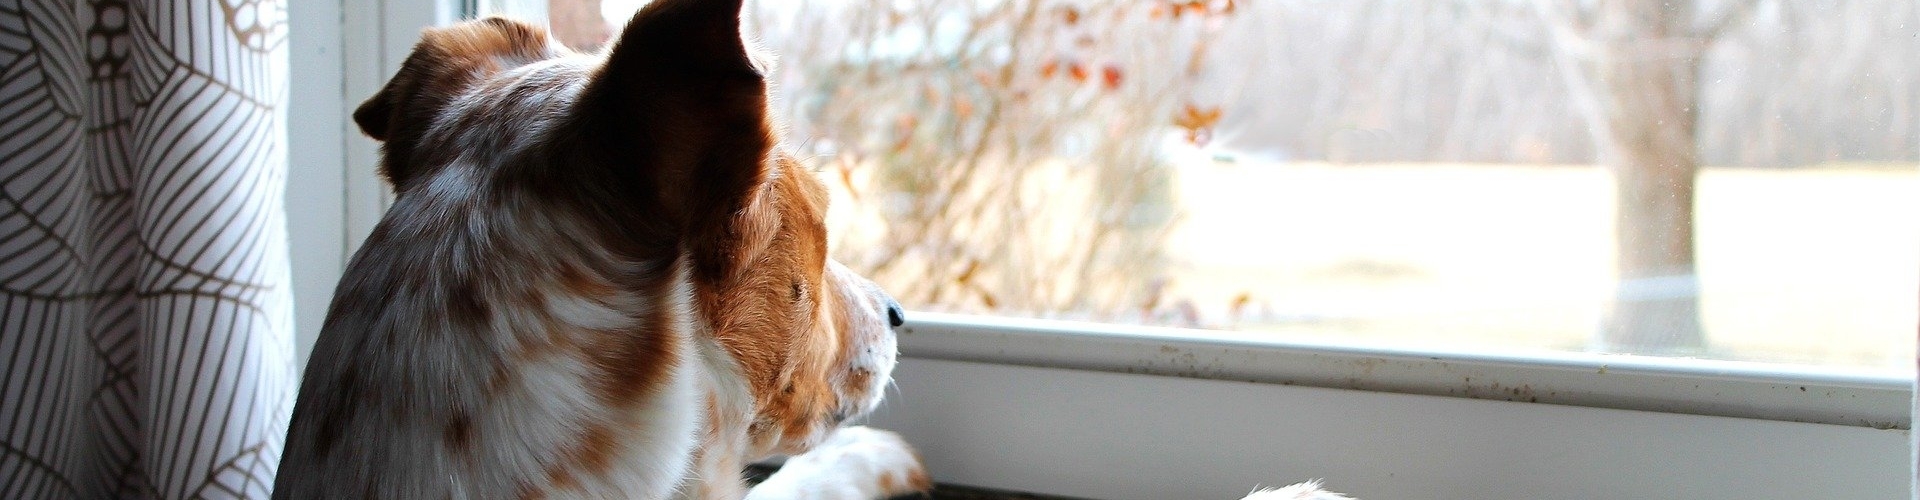 hond voor het raam